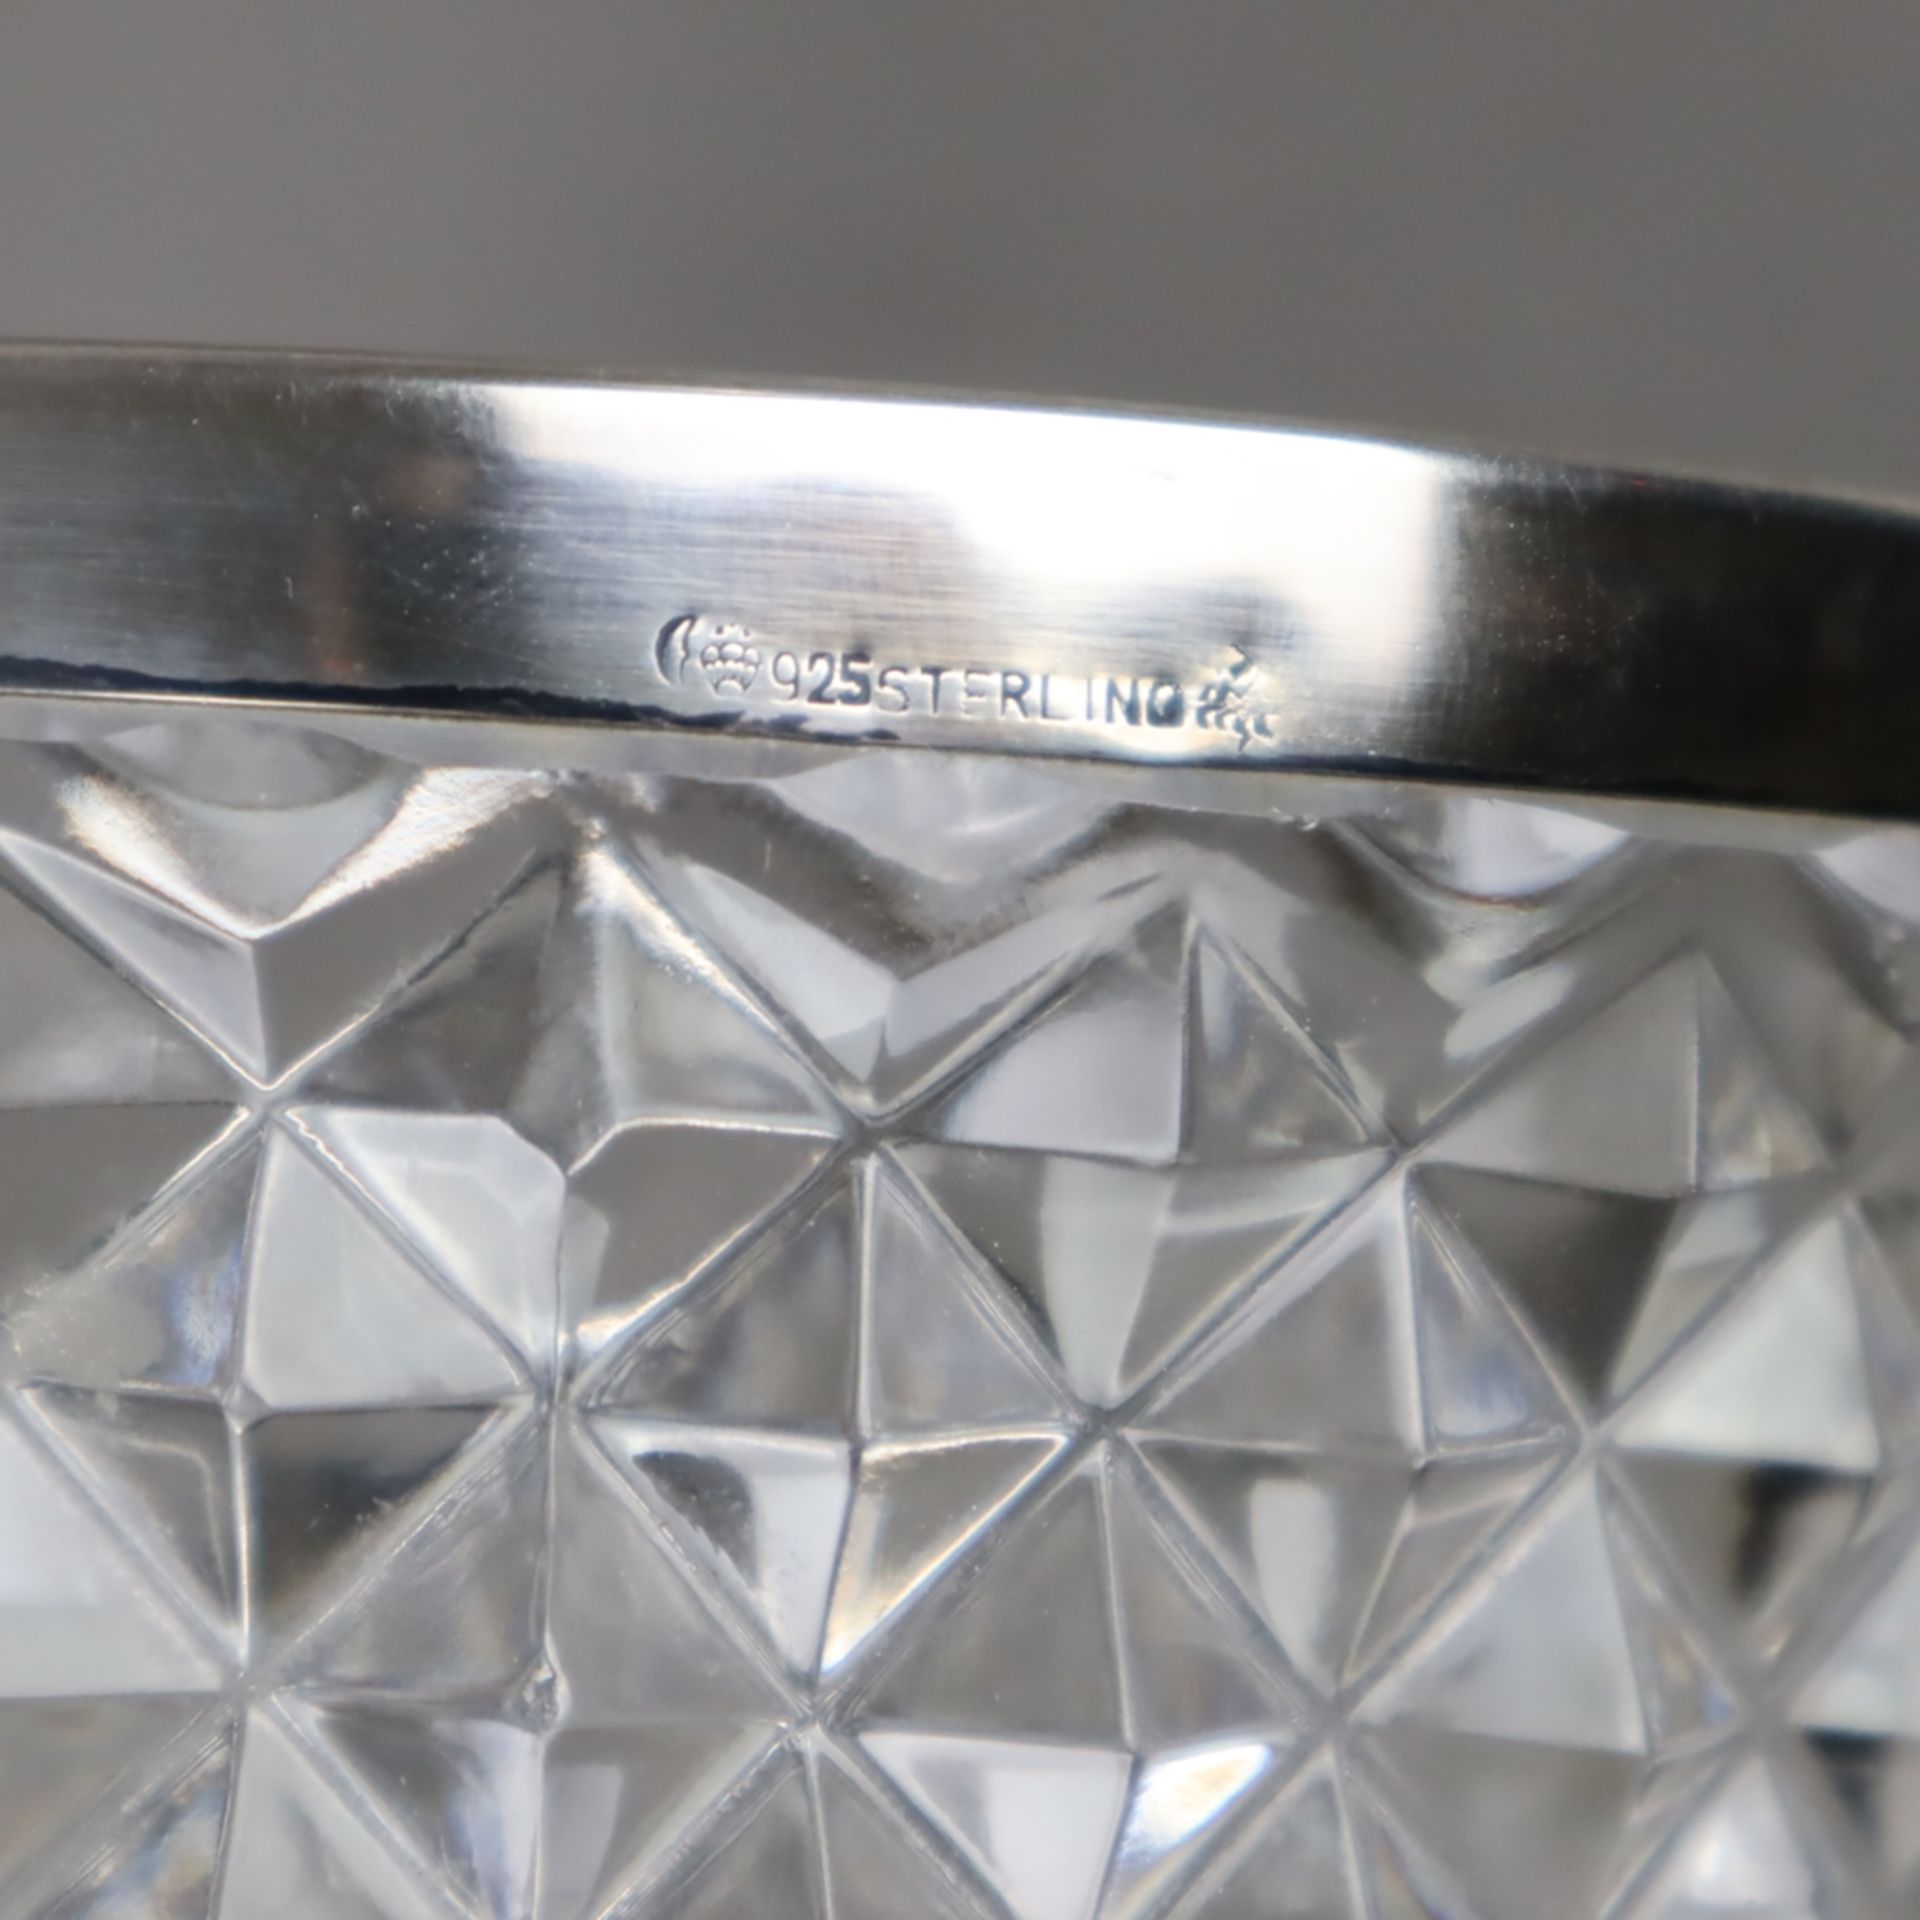 Glasvase mit Silbermontur - farblose Kristallvase mit Diamantschliff und glattem Sterlingsilber-Ran - Image 5 of 6